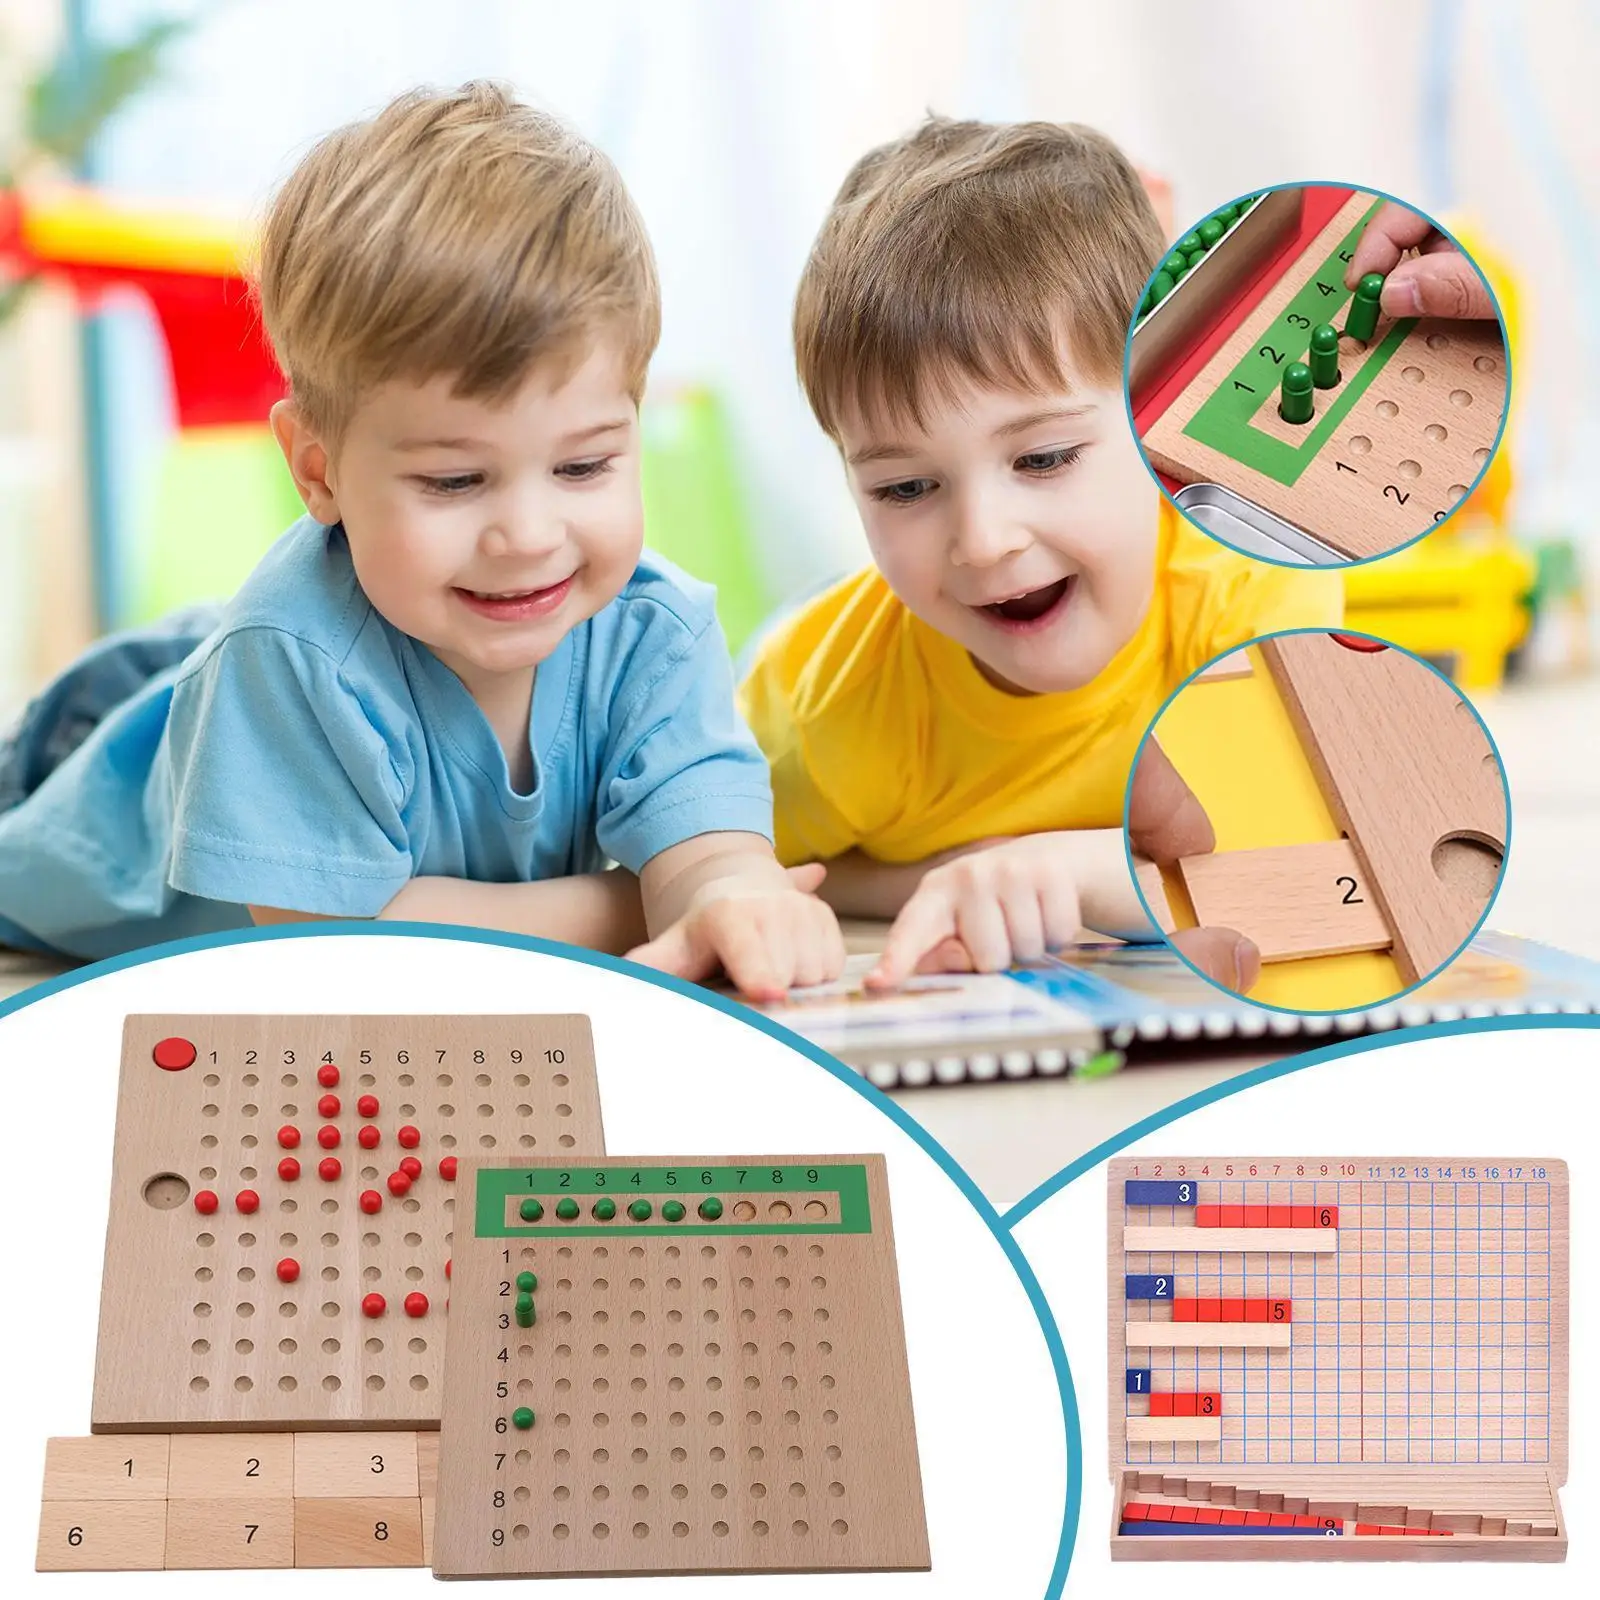 

Деревянная настольная головоломка Монтессори умножение сложение и вычитание настольная математическая игра-головоломка для детей игрушк...